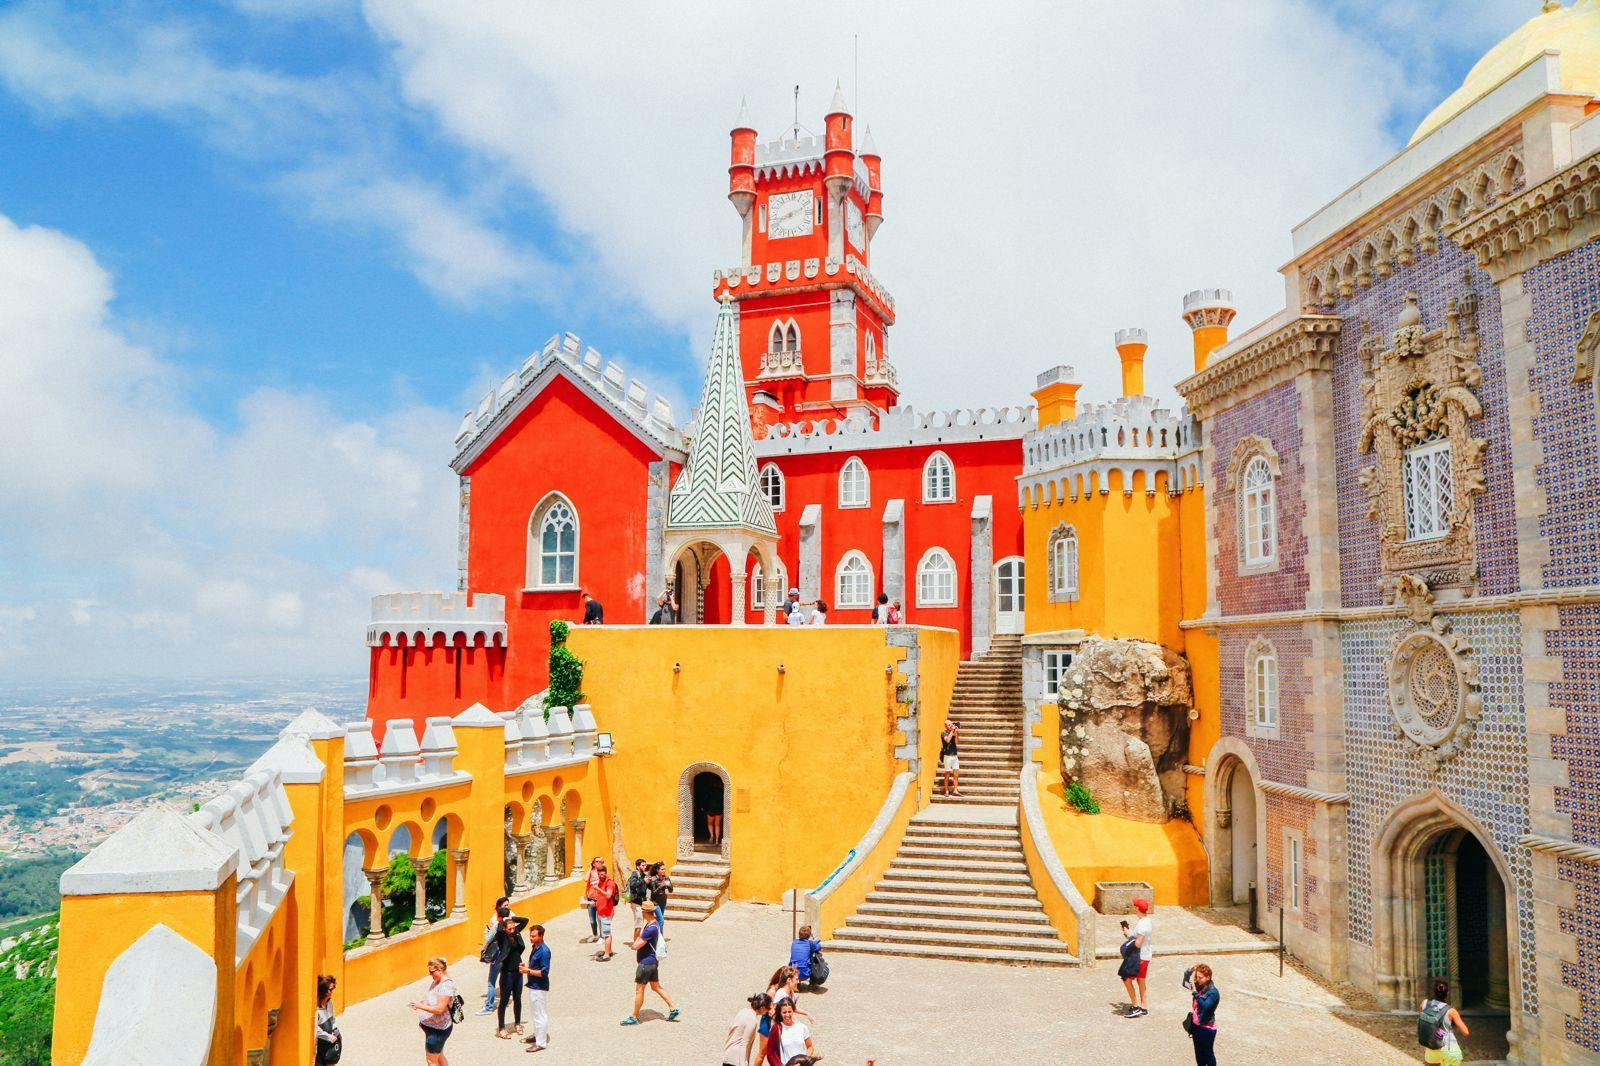 Das wunderschöne Schloss in Sintra während des jährlichen Sintra Festivals.